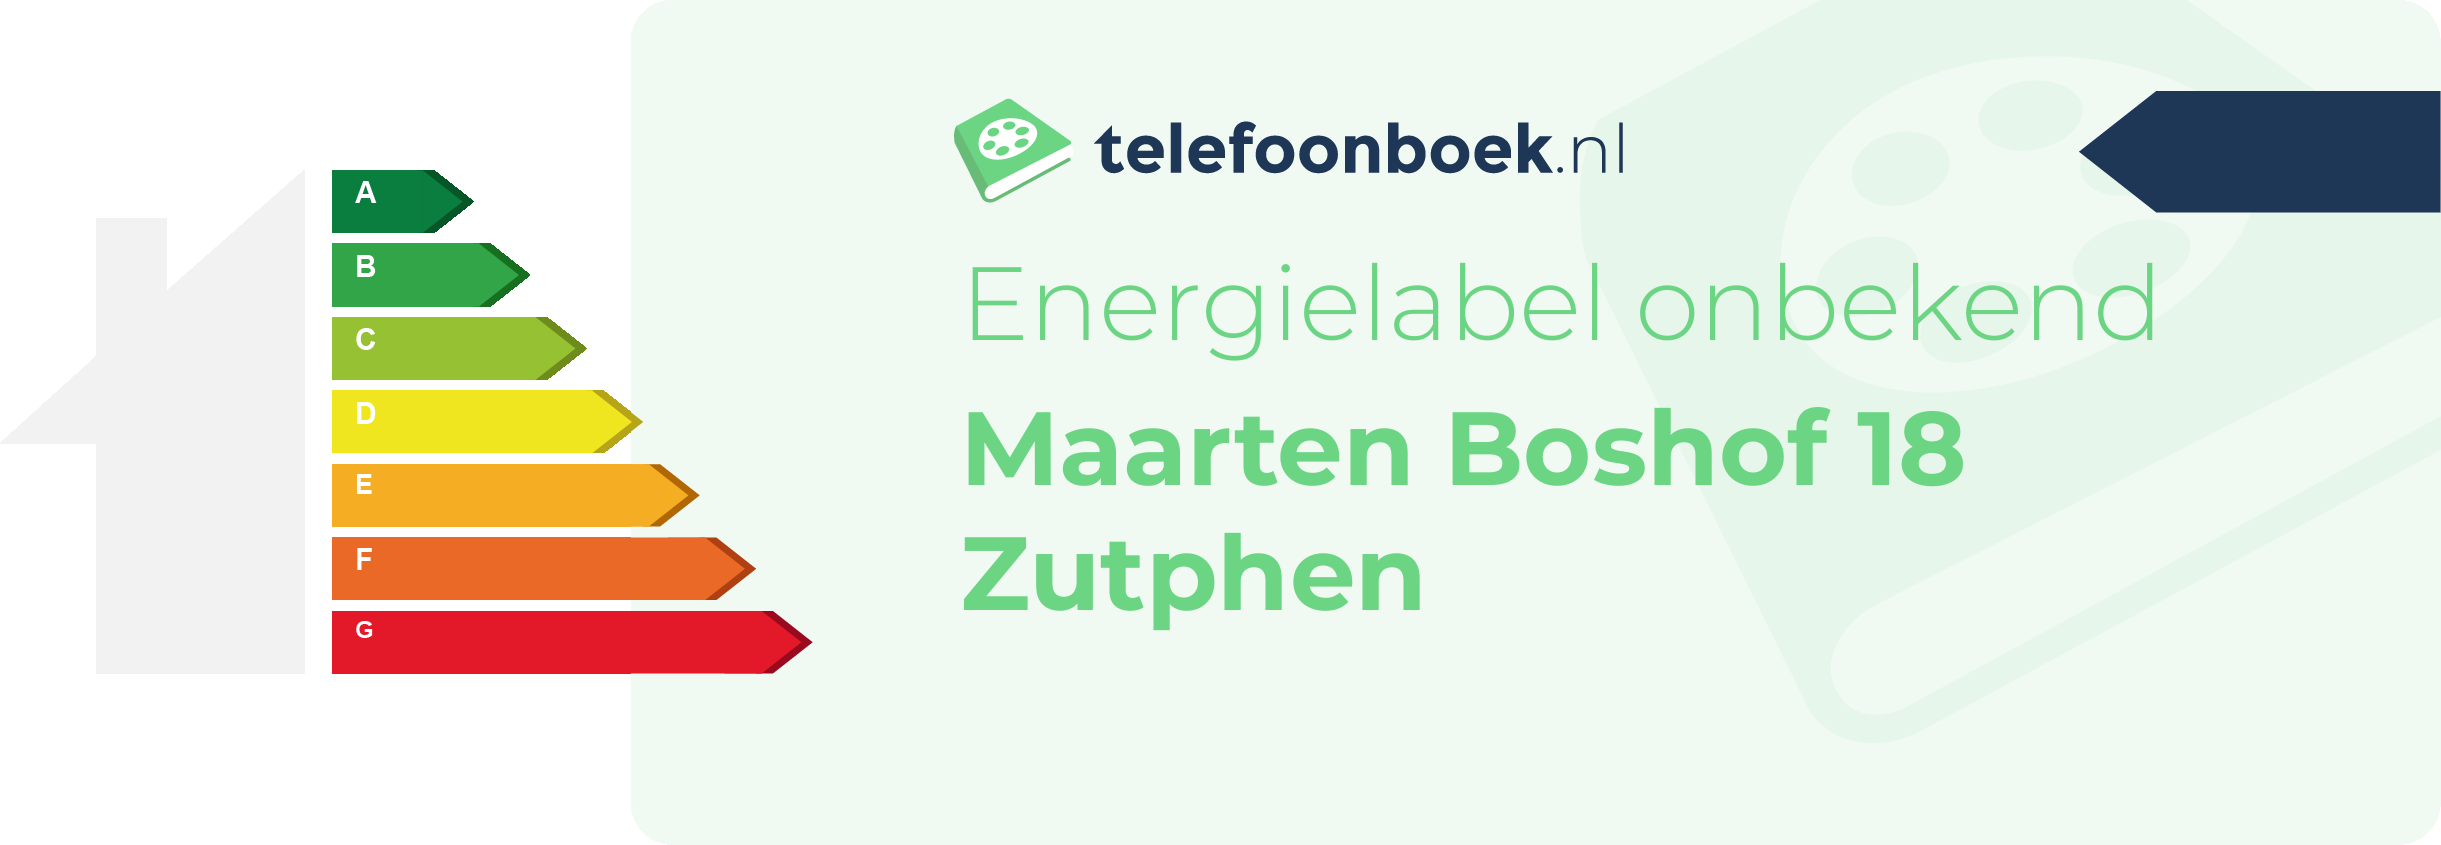 Energielabel Maarten Boshof 18 Zutphen